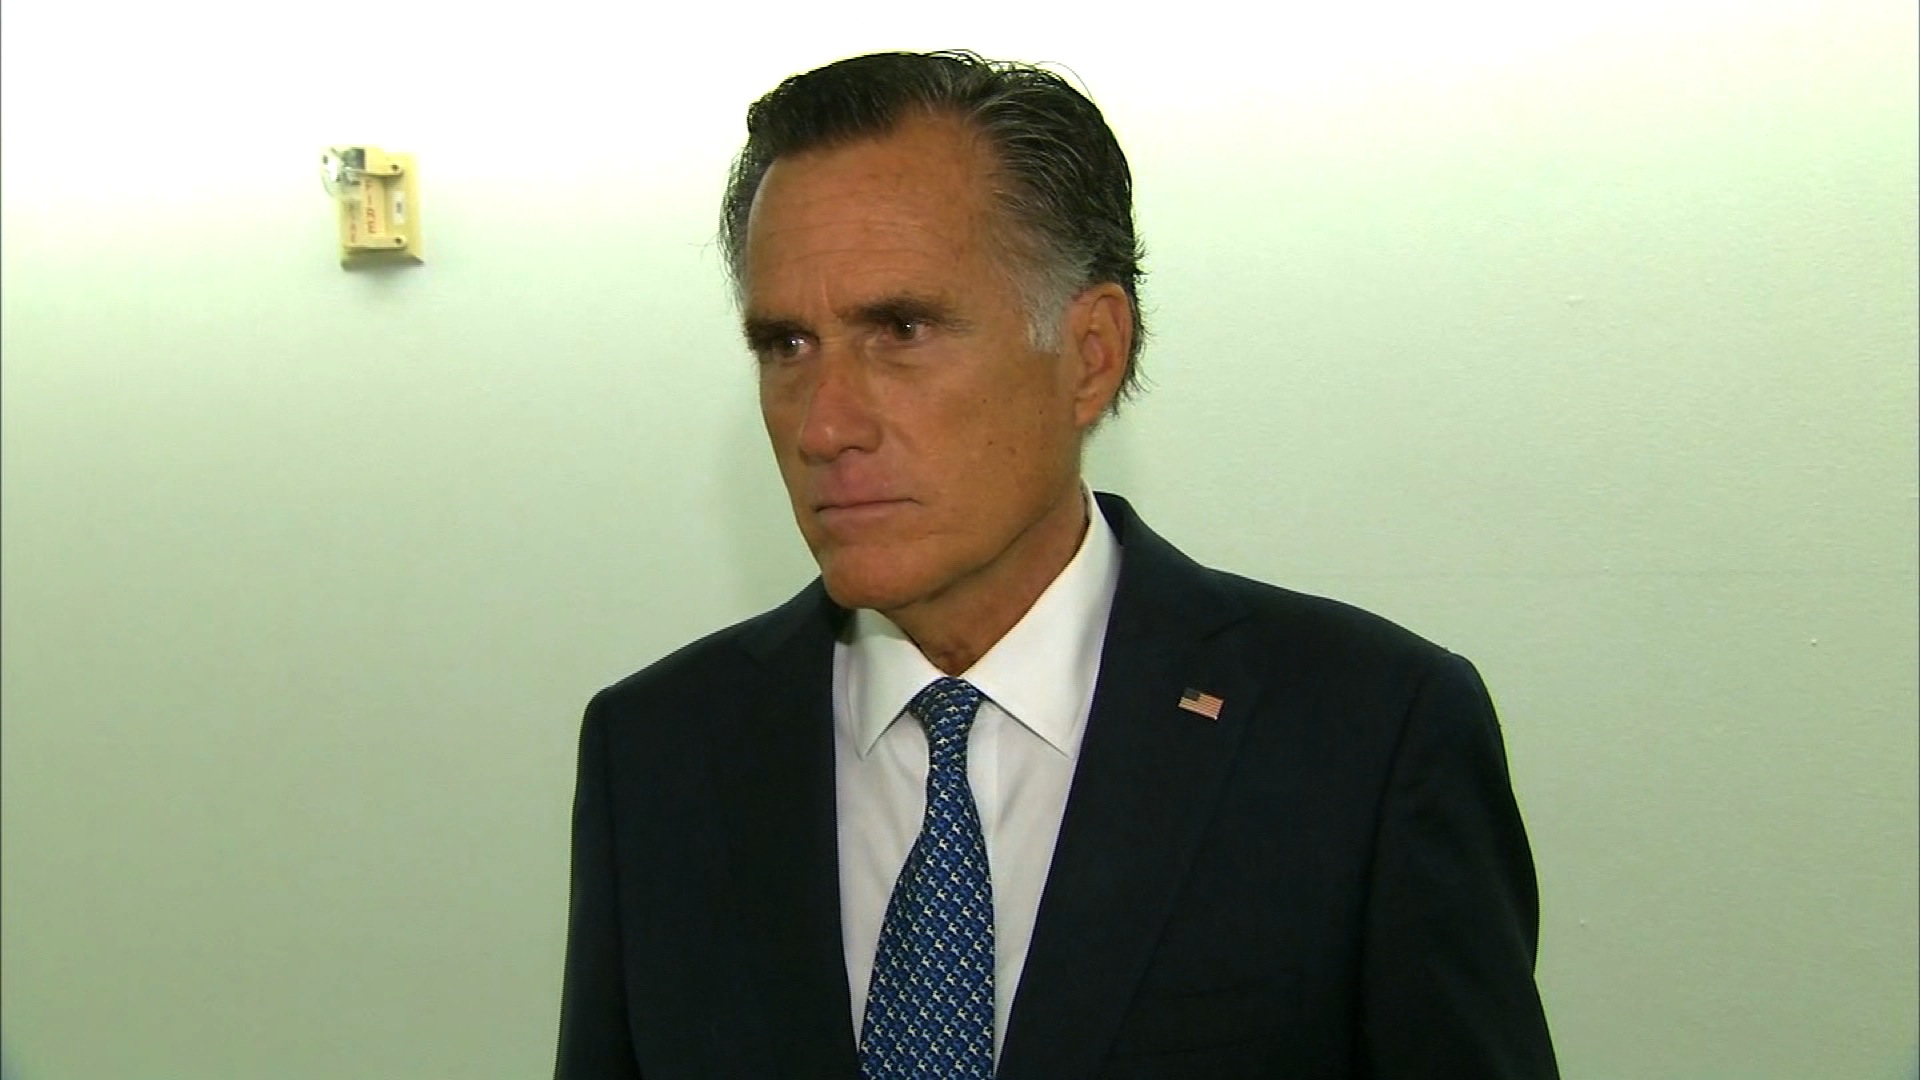 Republican Sen. Mitt Romney speaks in Washington, DC, on September 22.